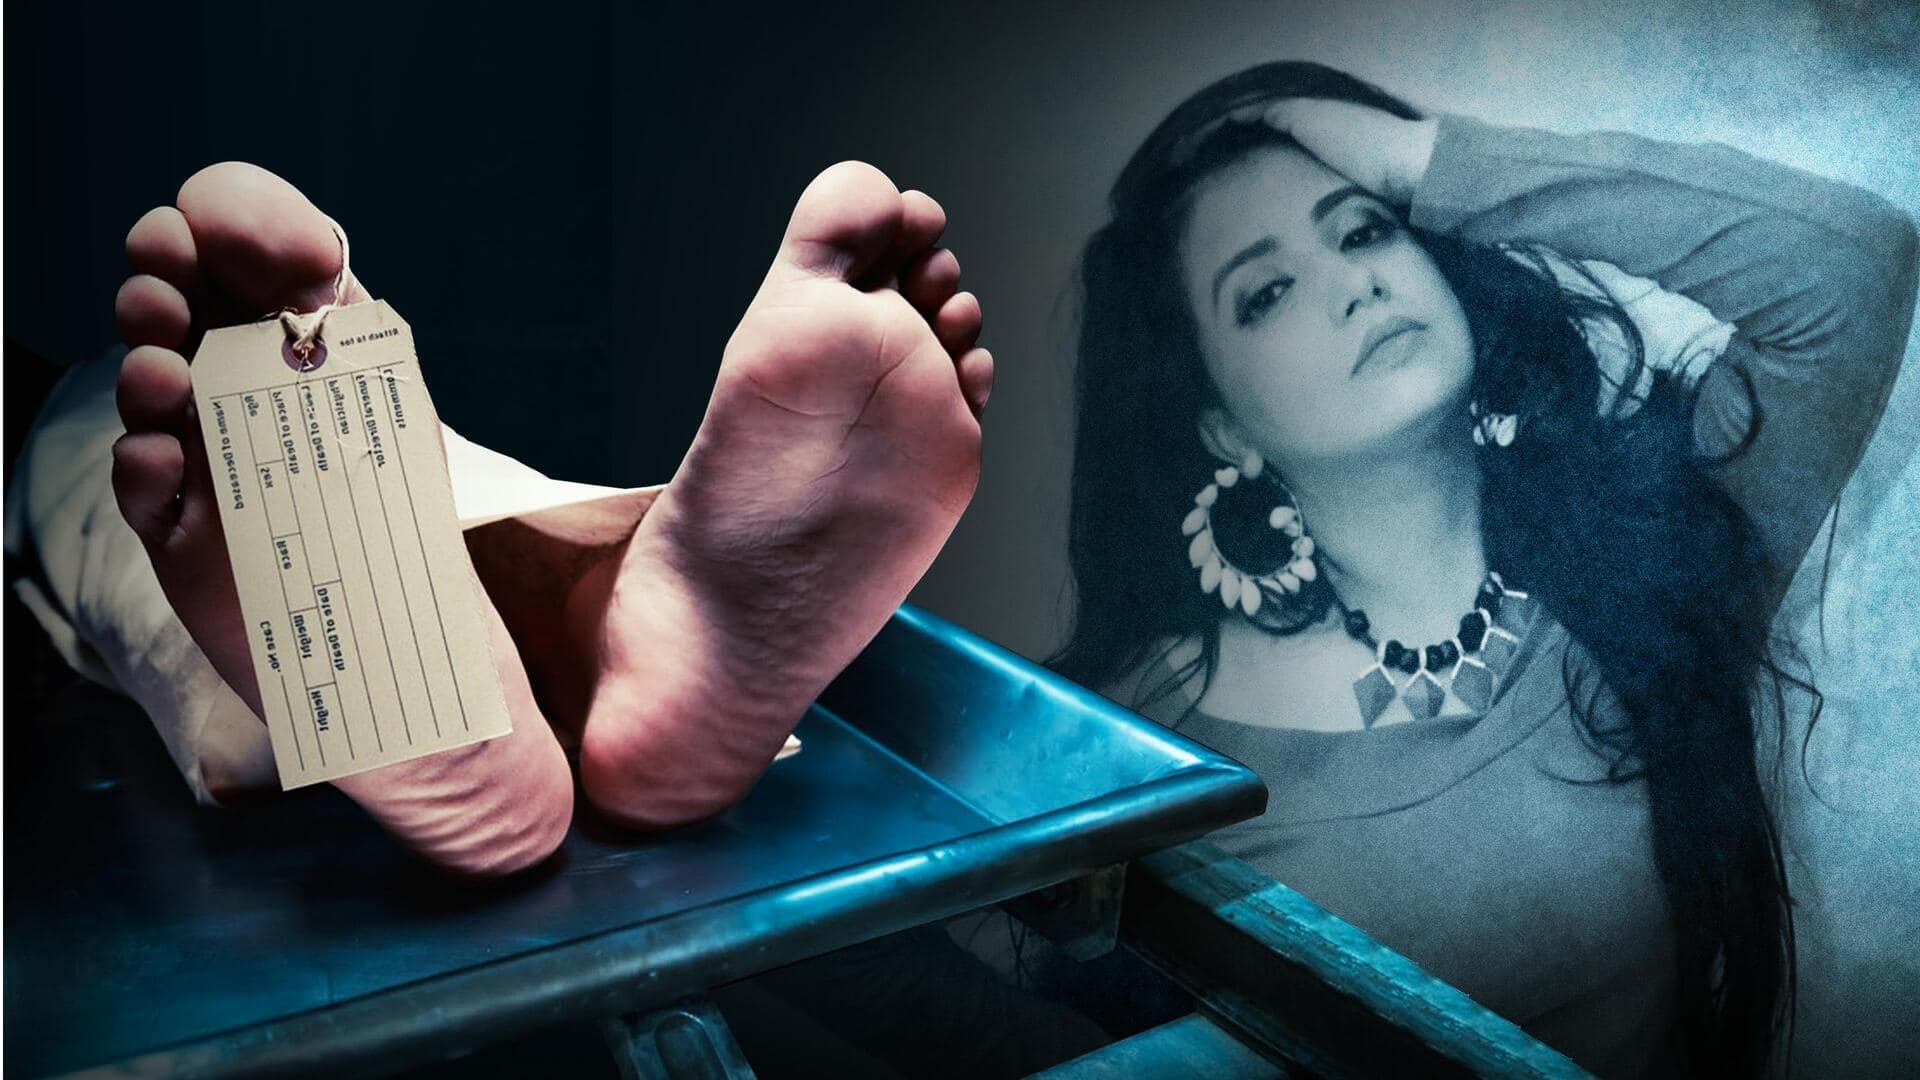 कौन थीं भोजपुरी अभिनेत्री अमृता पांडे जो अपने घर में मृत पाई गईं?